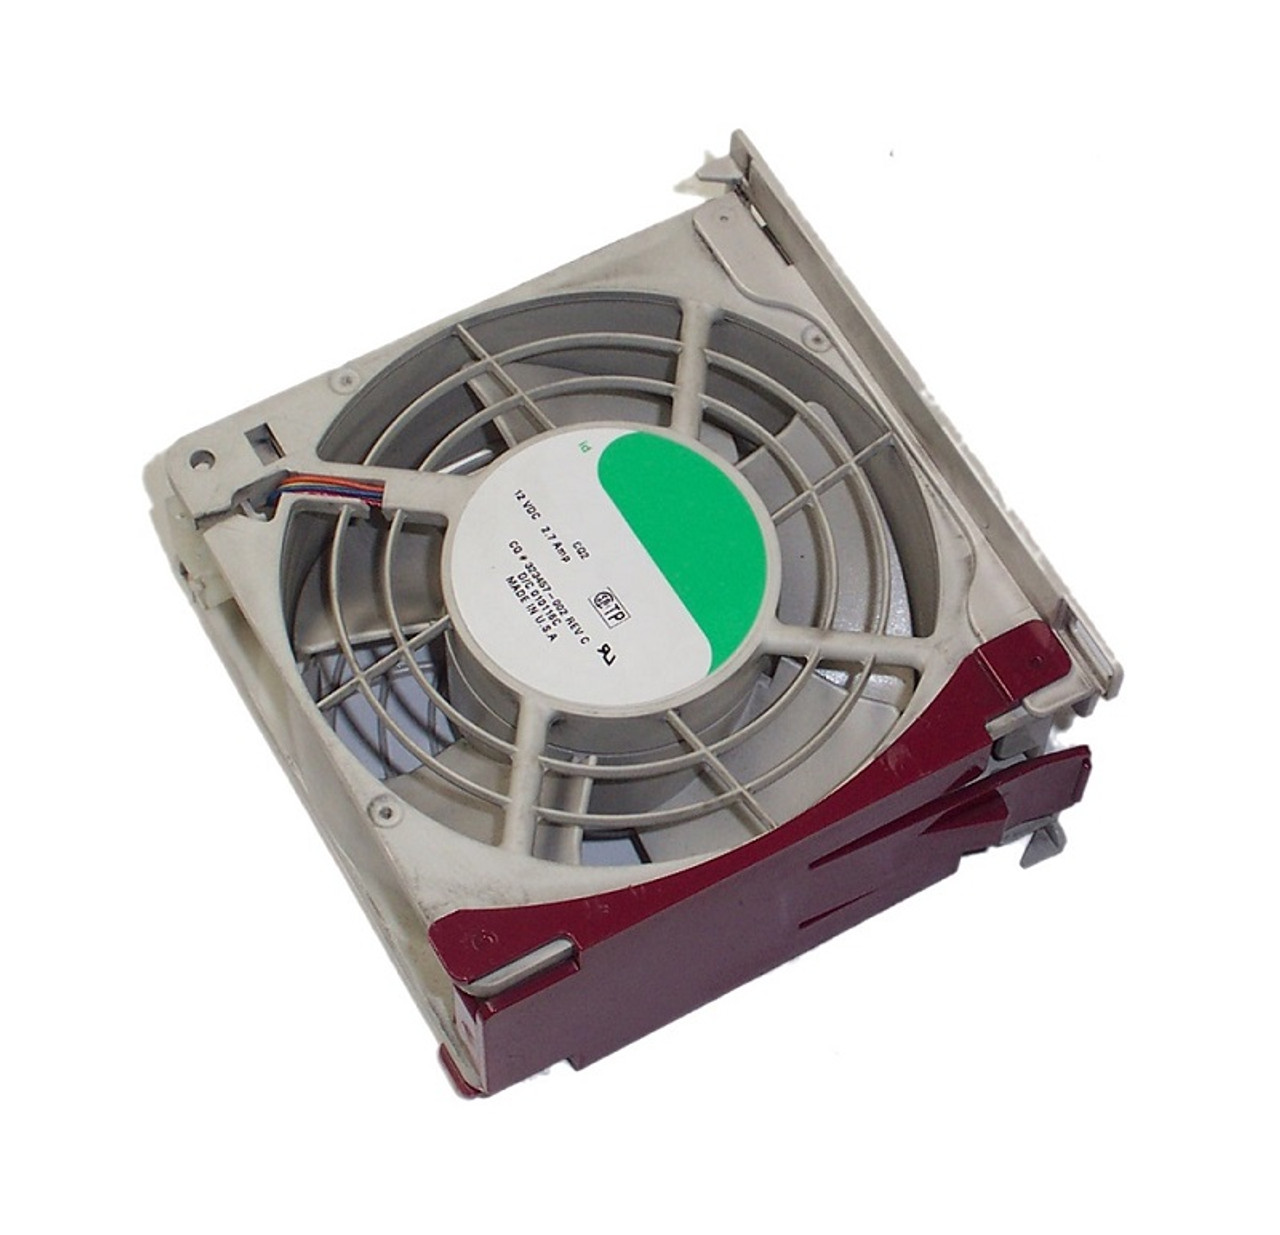 592950-001 - HP Cooling Fan for Elitebook 8440p